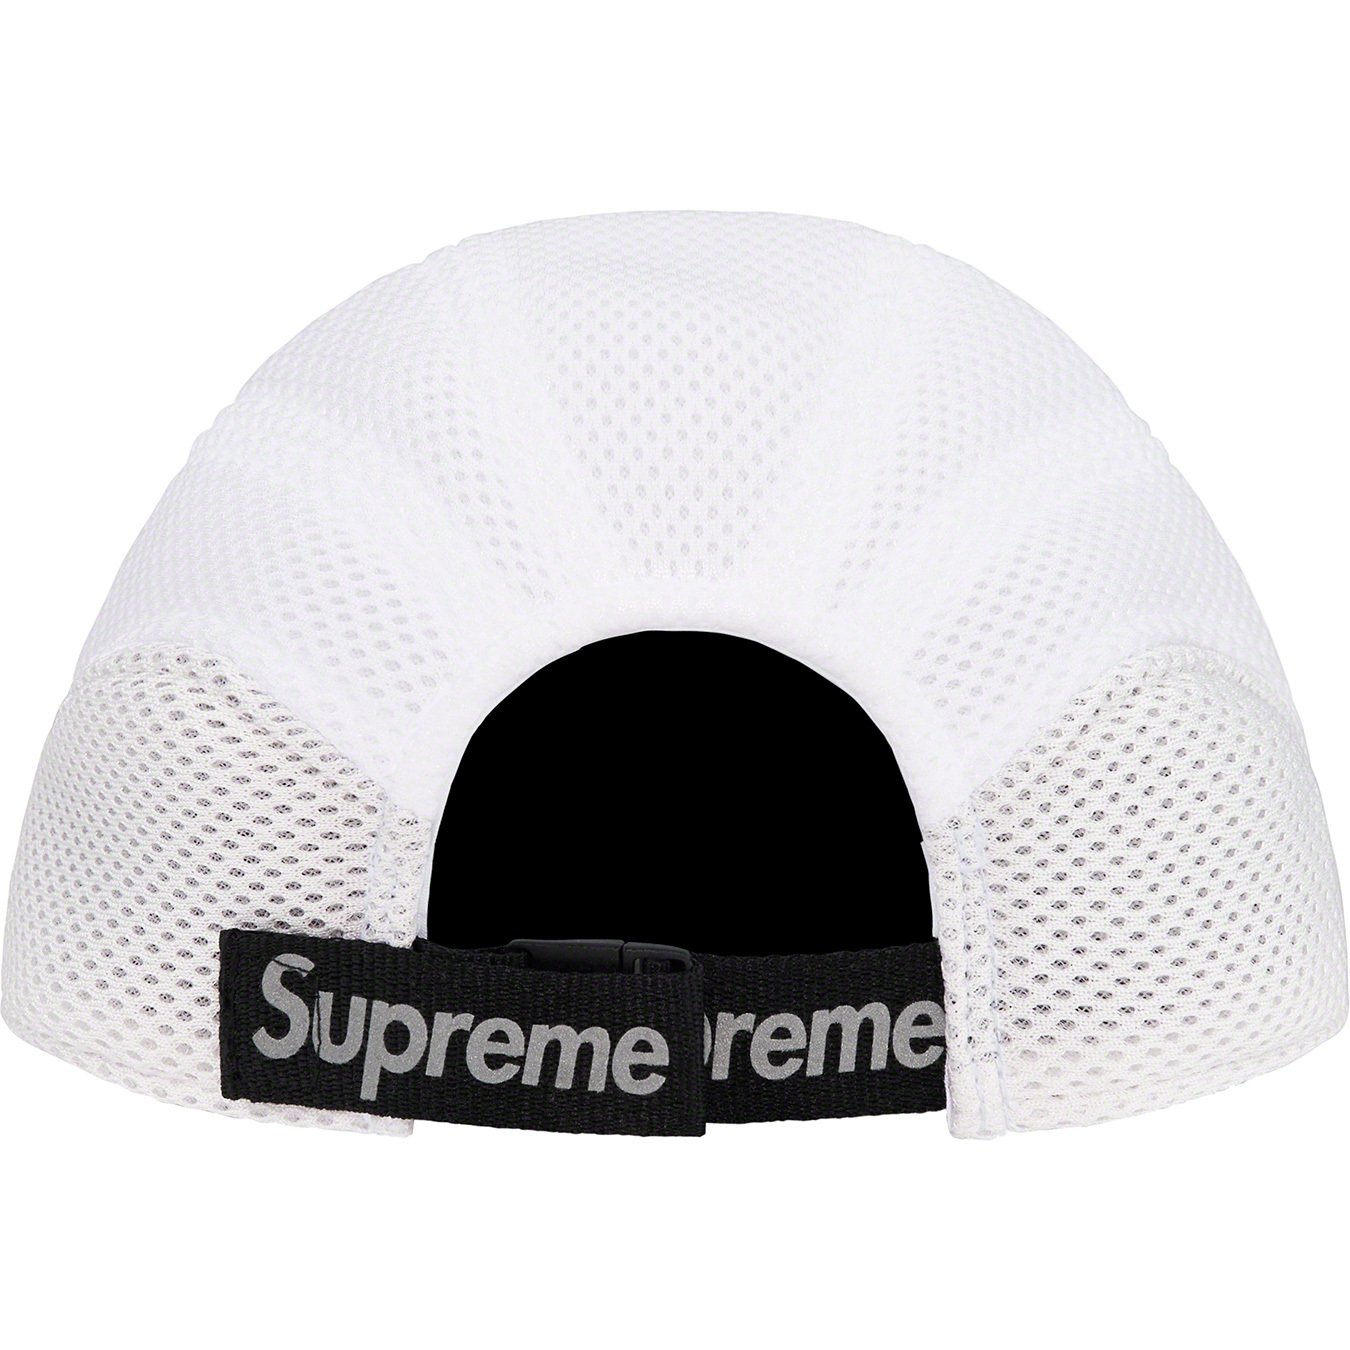 えしてない Supreme - Supreme Nike Shox Running Hat Capの通販 by